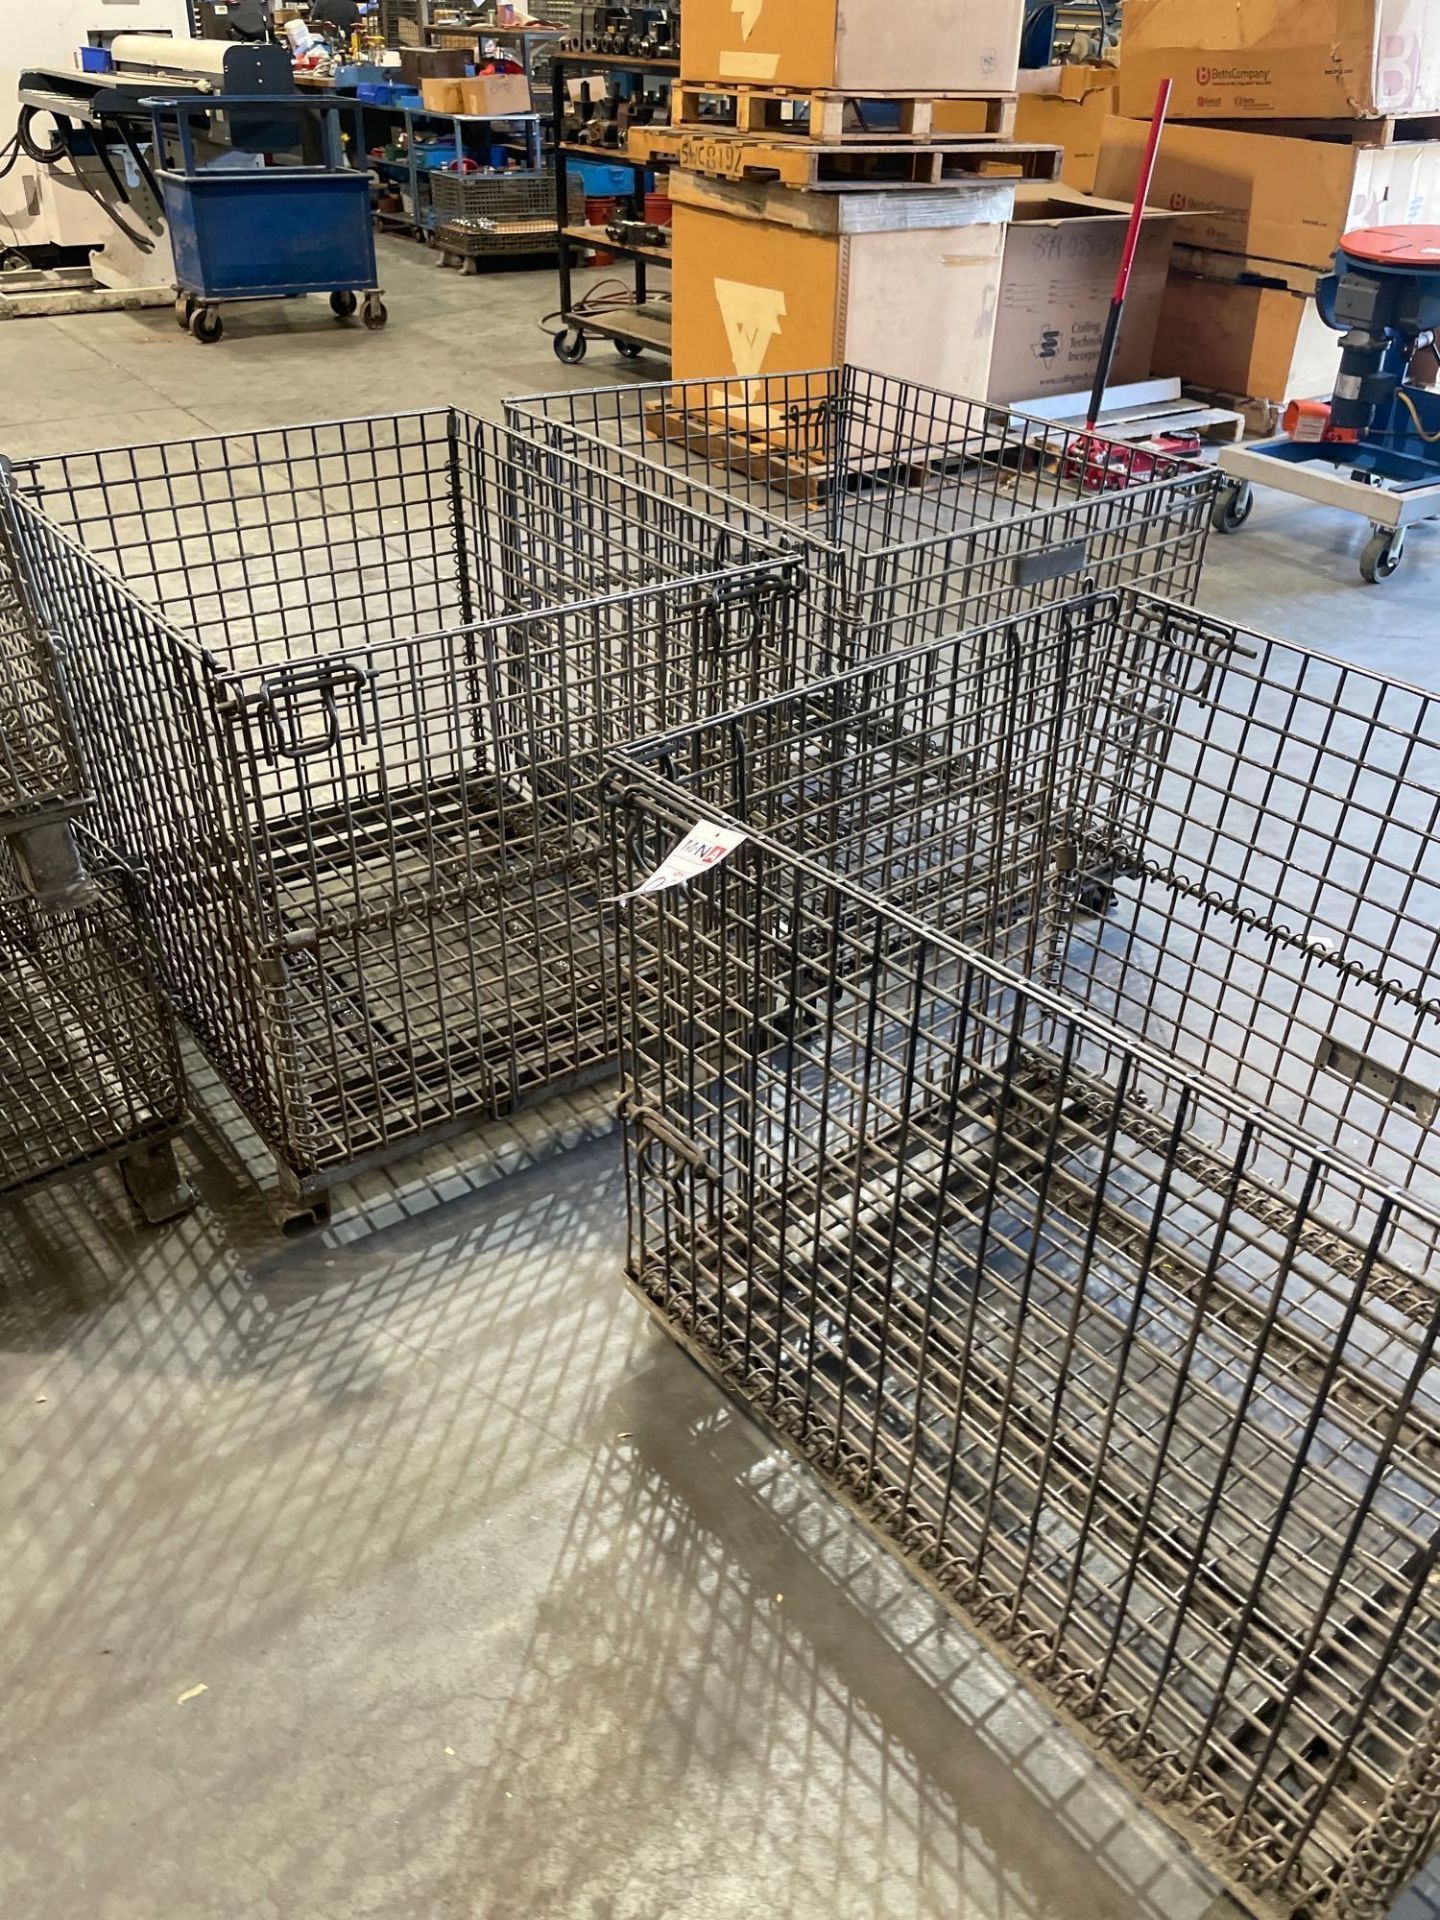 (5) 32" x 40" x 30" Wire Transport Baskets